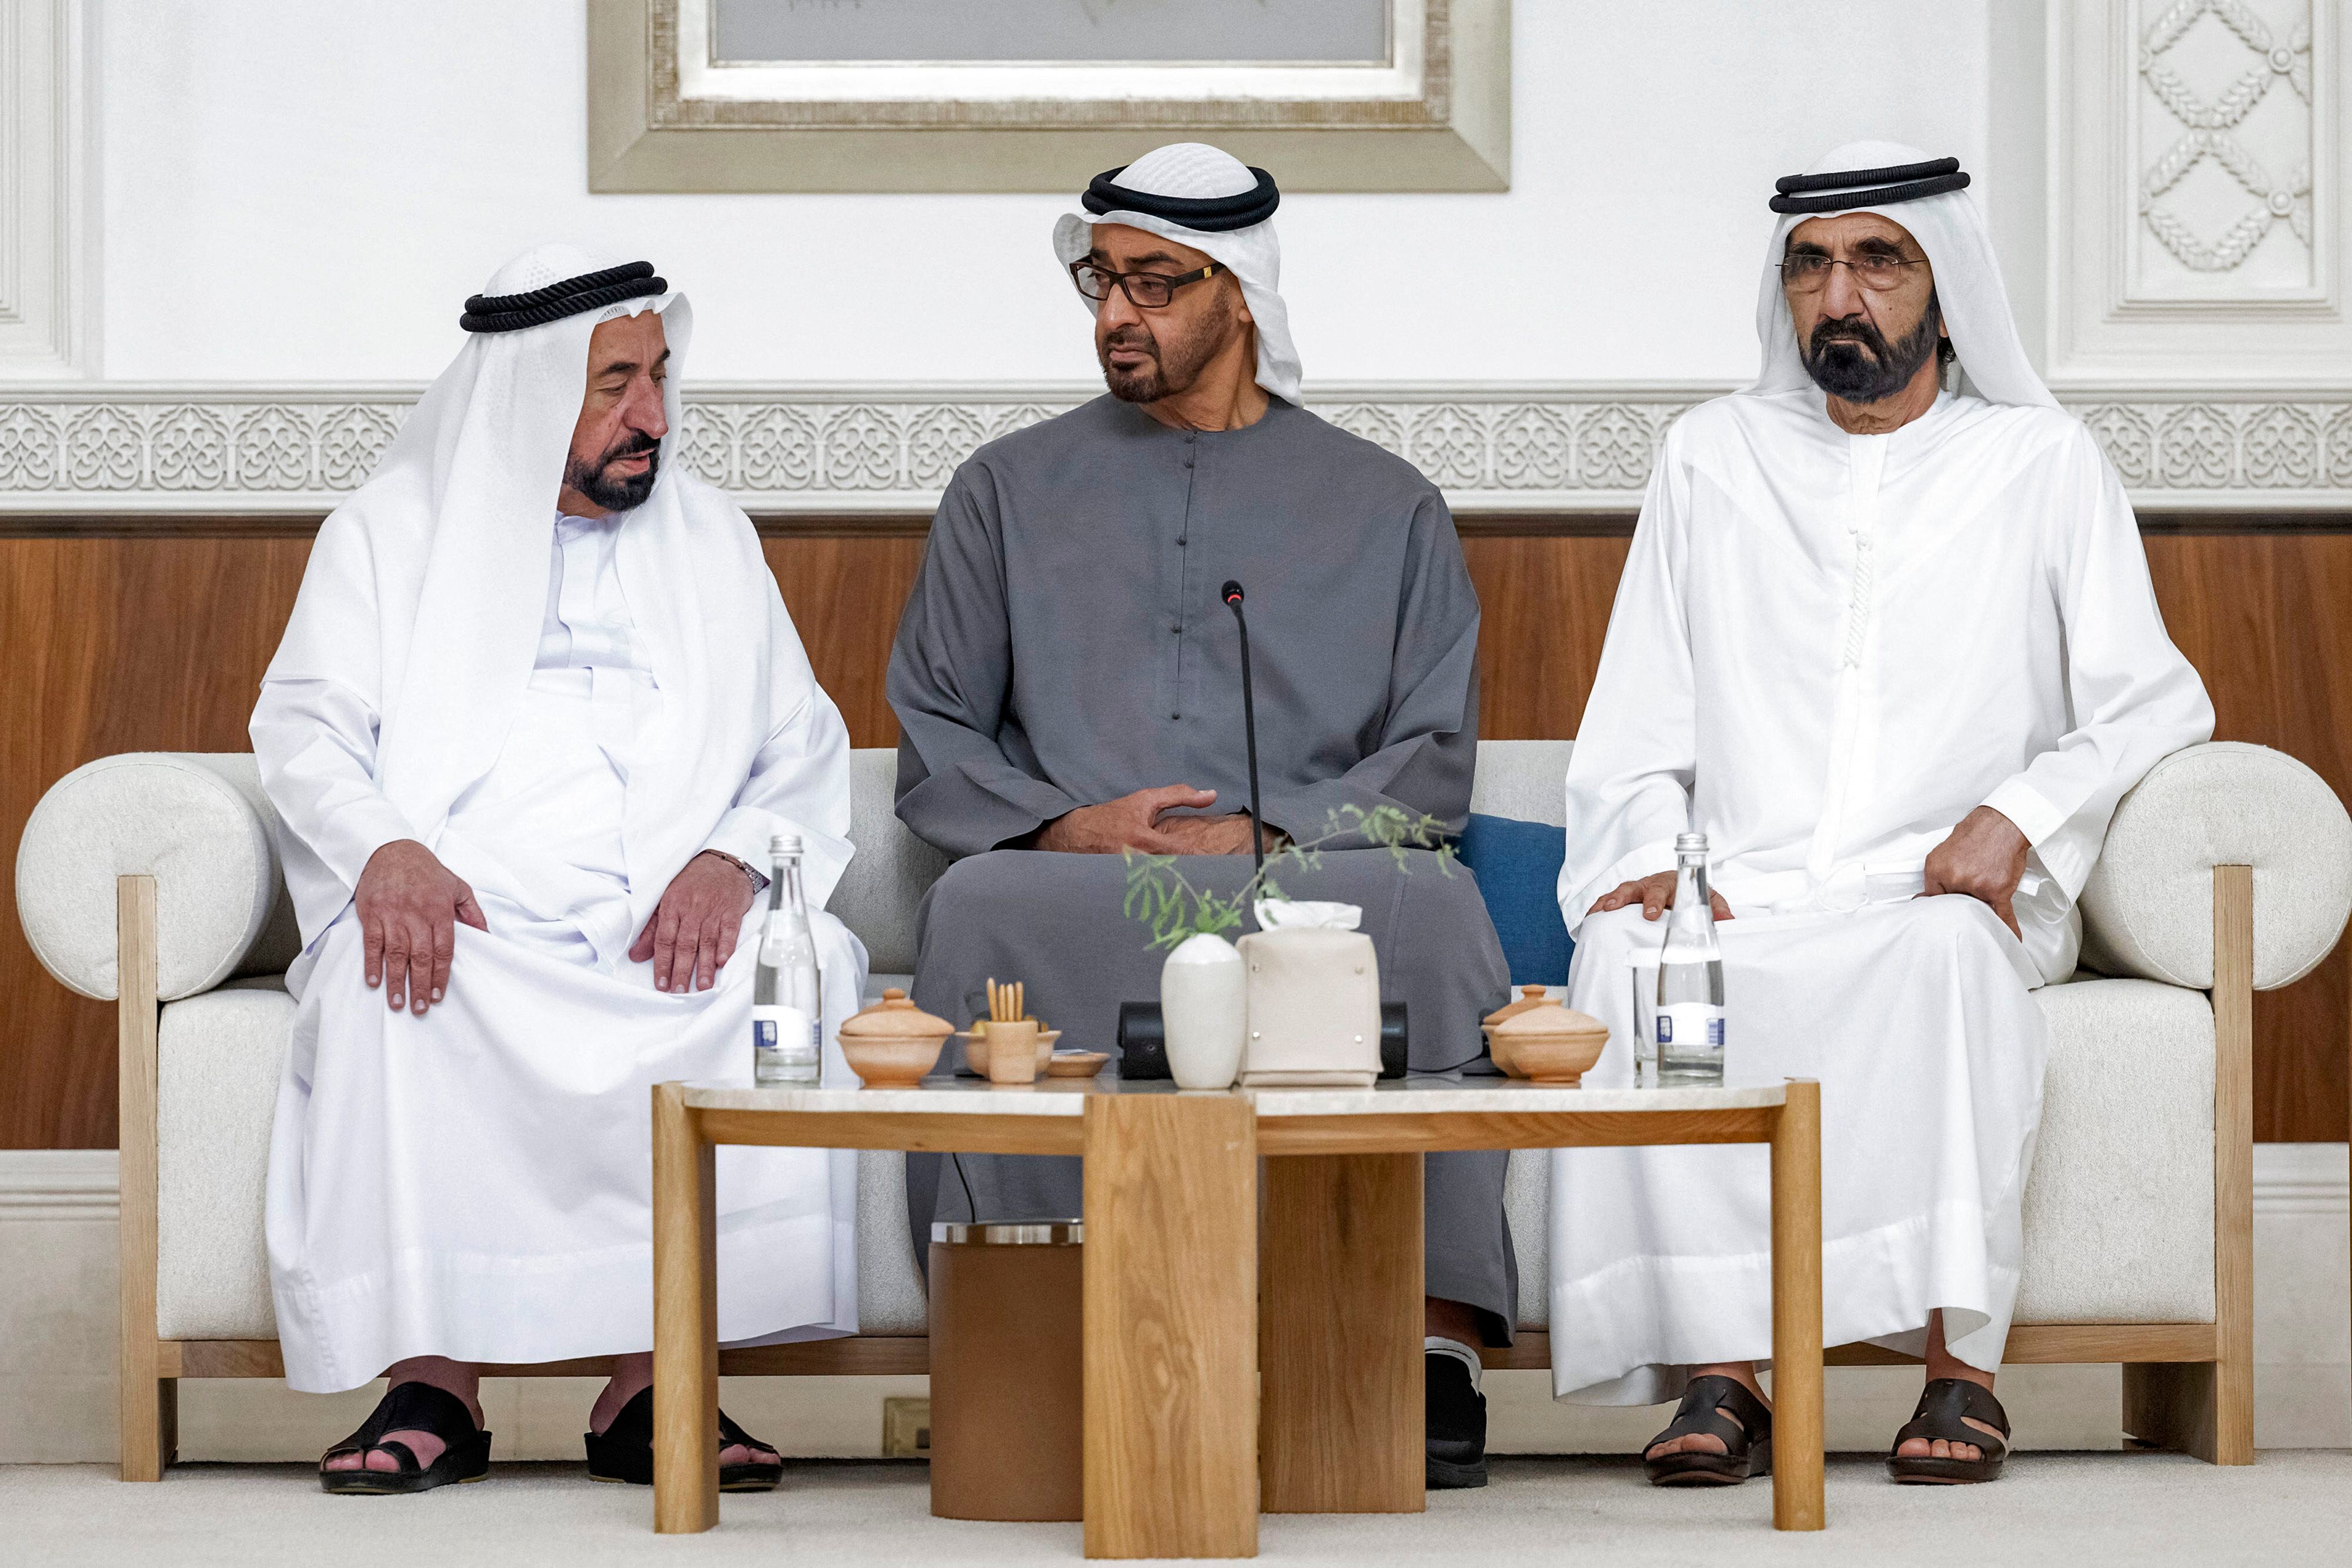 Una imagen proporcionada por la Agencia de Noticias de los Emiratos Árabes Unidos muestra a los miembros del Consejo Federal Supremo de los Emiratos Árabes Unidos (de izquierda a derecha): el jeque Sultan bin Muhammad al-Qasimi de Sharjah, el jeque Mohamed bin Zayed al-Nahyan de Abu Dhabi, y el jeque Mohamed bin Rashid al-Maktoum de Dubai reunidos con otros miembros del consejo para elegir al jeque Mohamed bin Zayed al-Nahyan de Abu Dhabi. (Foto de Hamad AL-KAABI / Ministerio de Asuntos Presidenciales - Abu Dhabi / AFP)